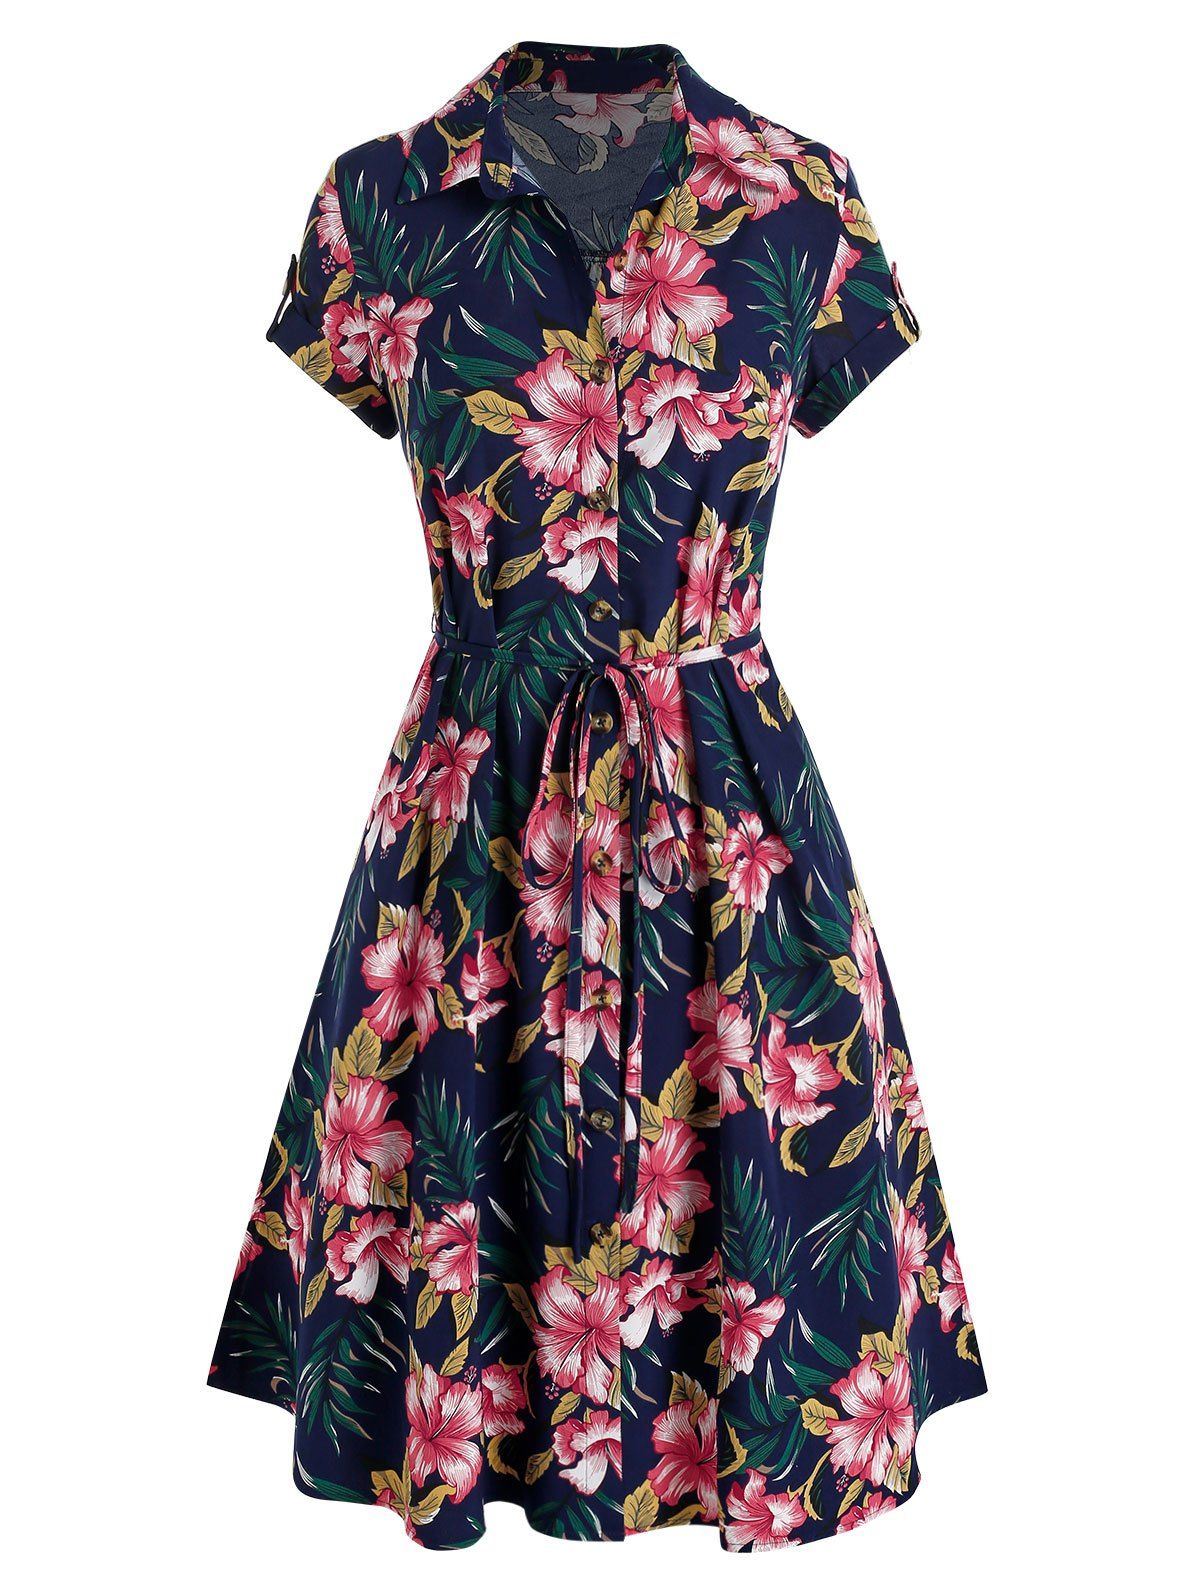 Tropical Flower Print Belted Shirt Dress - DEEP BLUE M